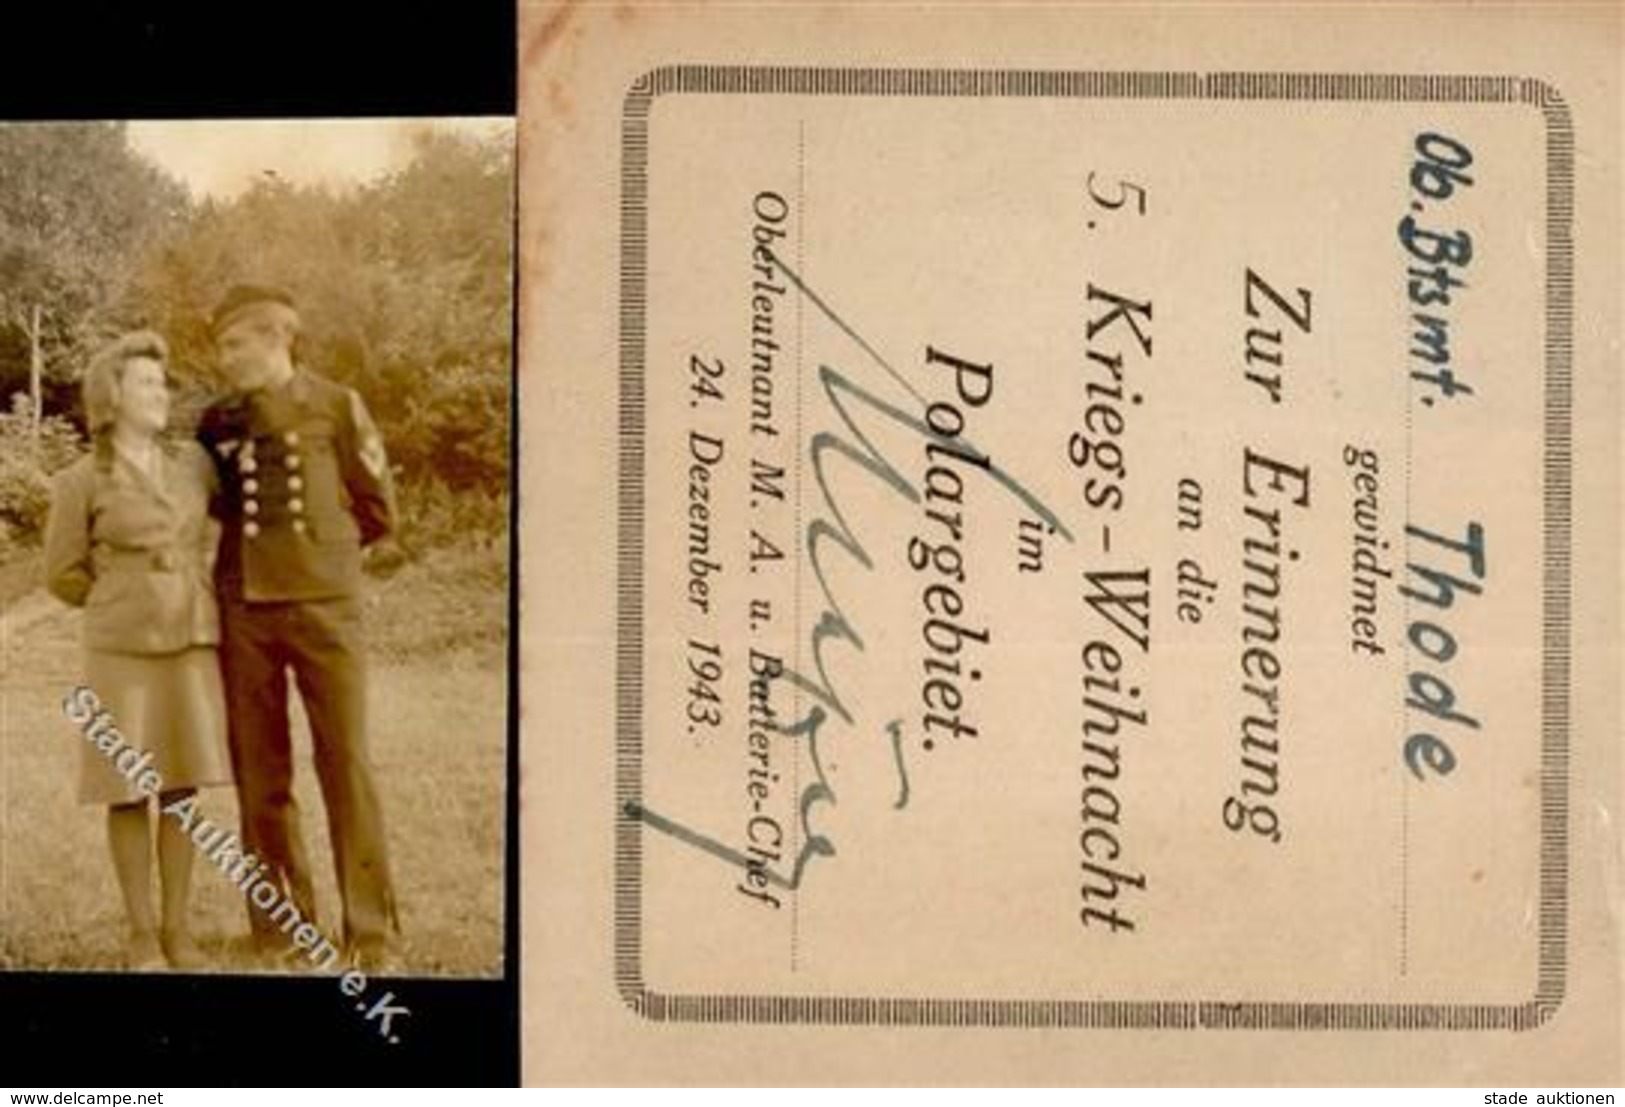 KRIEGSWEIHNACHT WK II - Erinnerung 5.Kriegs-Weihnacht Im POLARGEBIET 24.12.43 (Zettel) + Bootsmann-Foto I-II" - Weltkrieg 1939-45